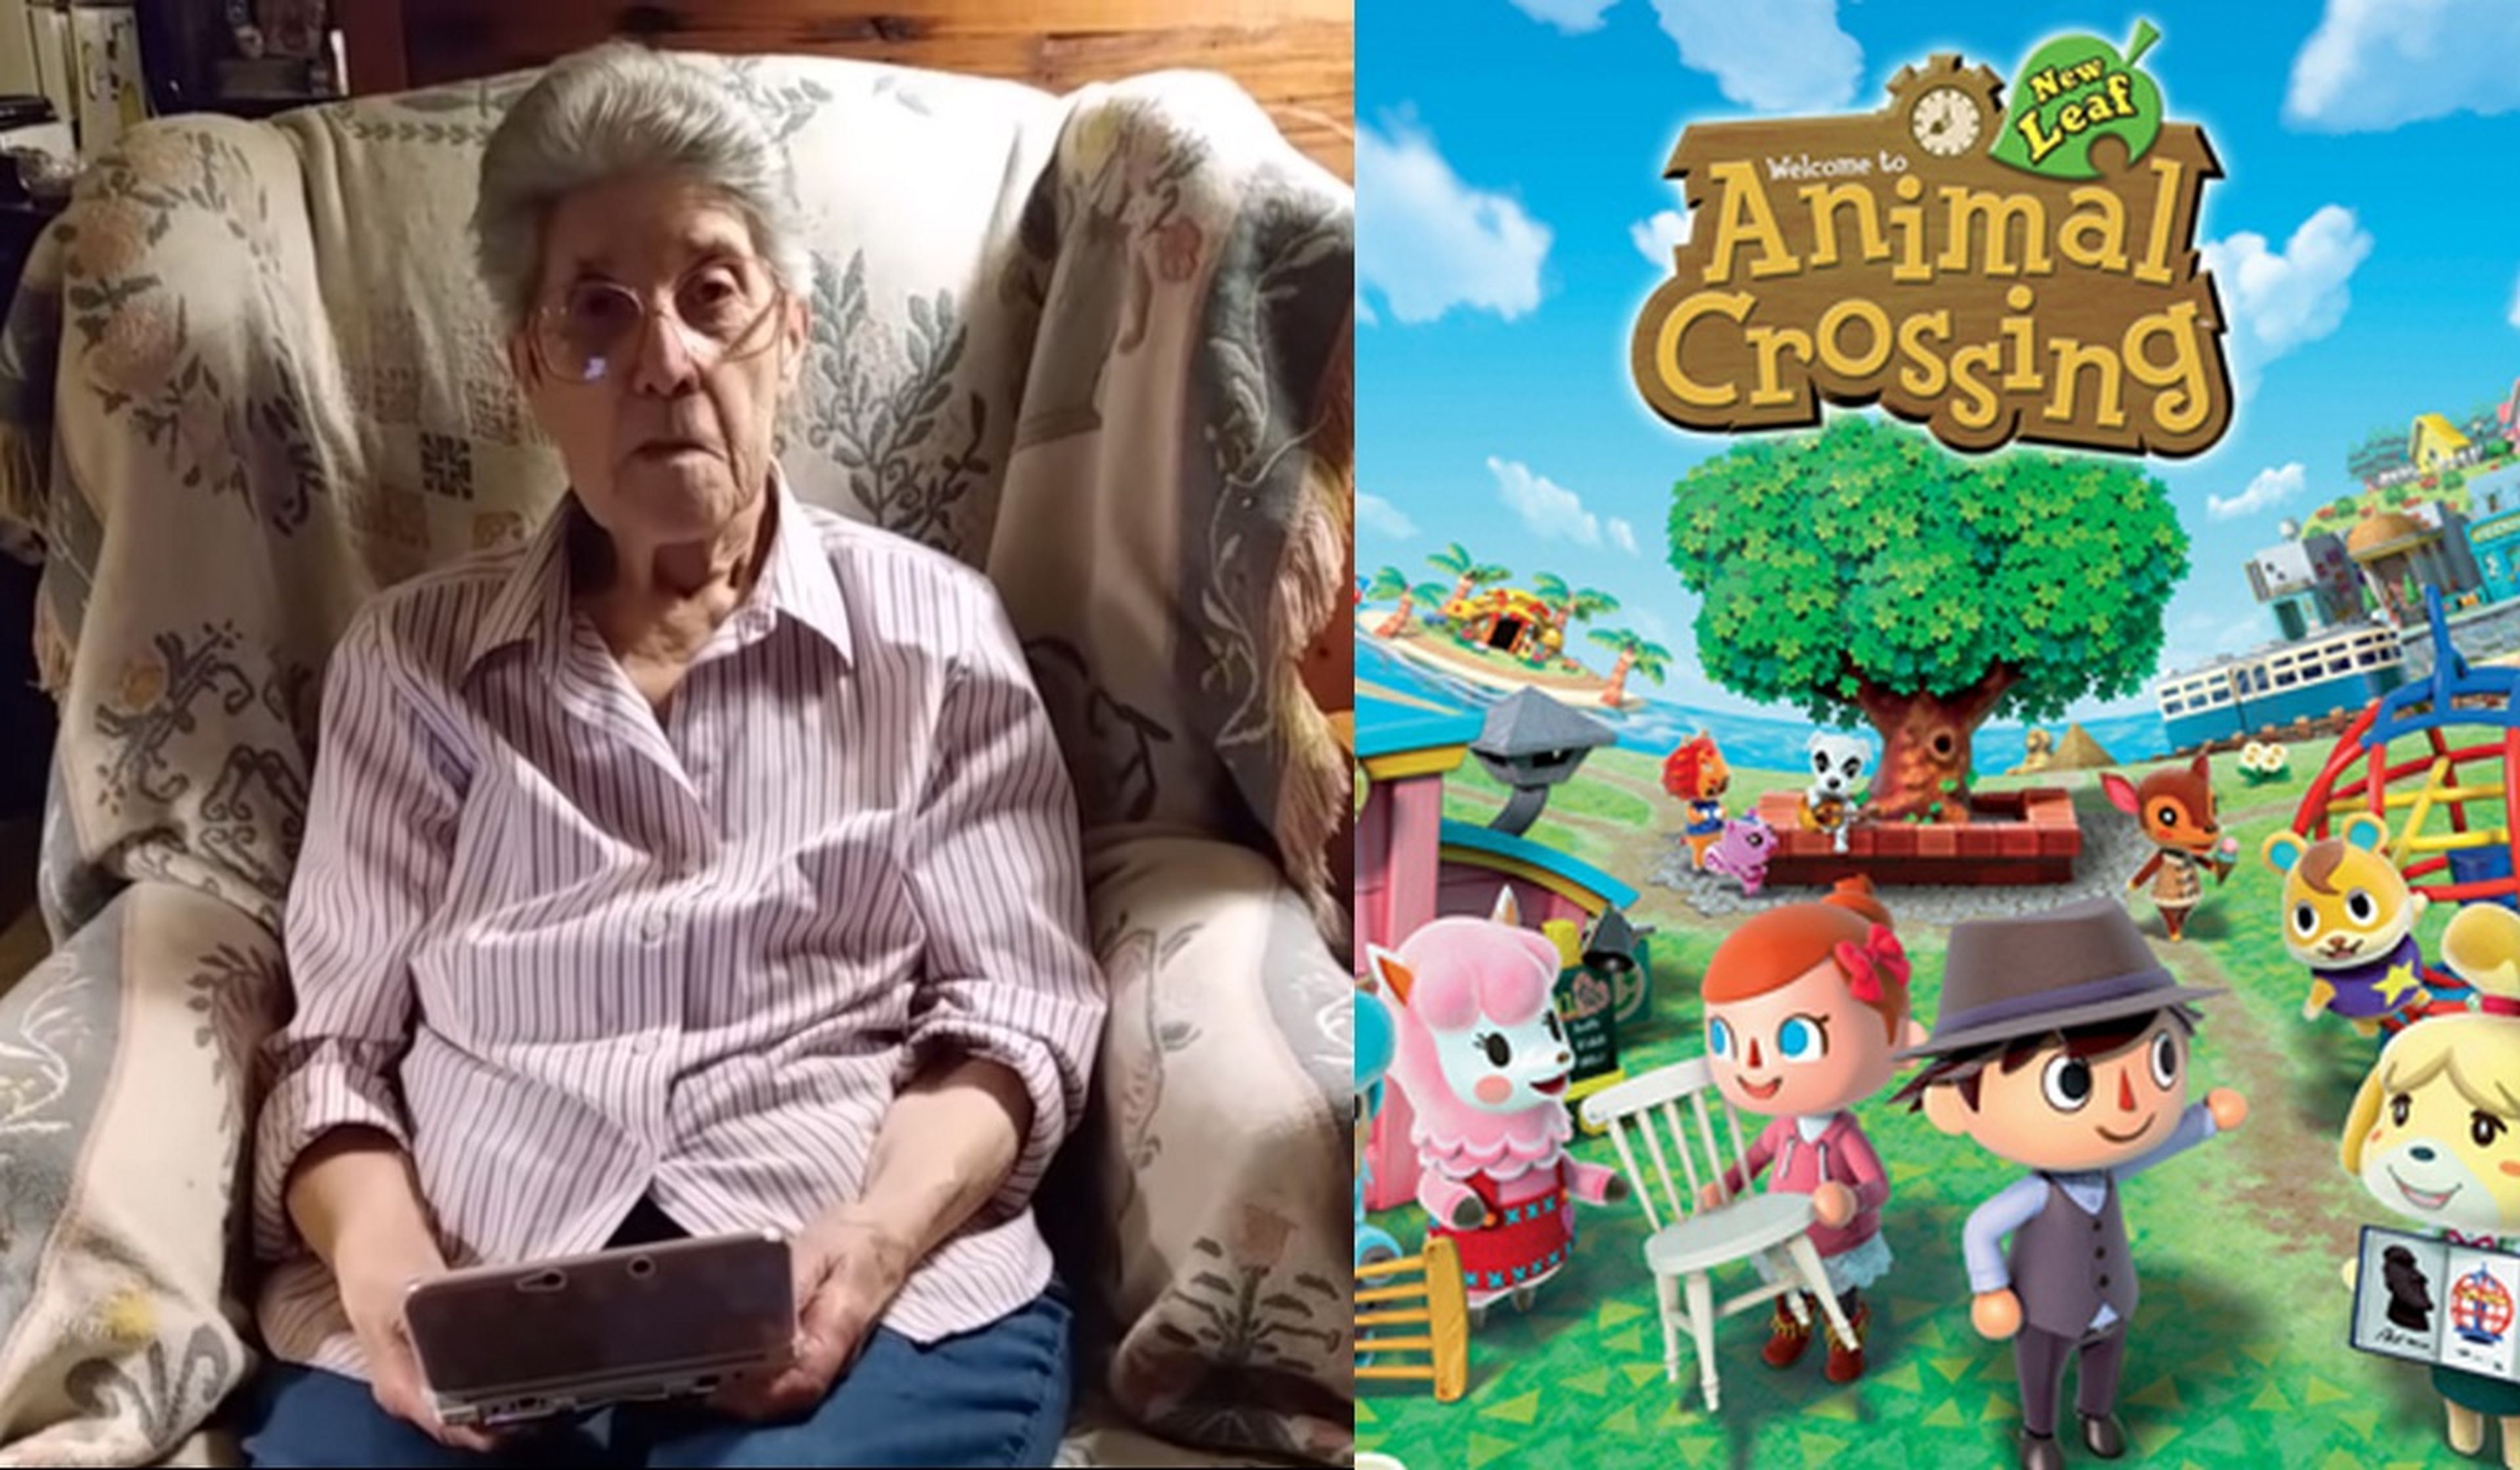 La abuela de 87 años que ha jugado 3580 horas a Animal Crossing, te deja visitar su pueblo